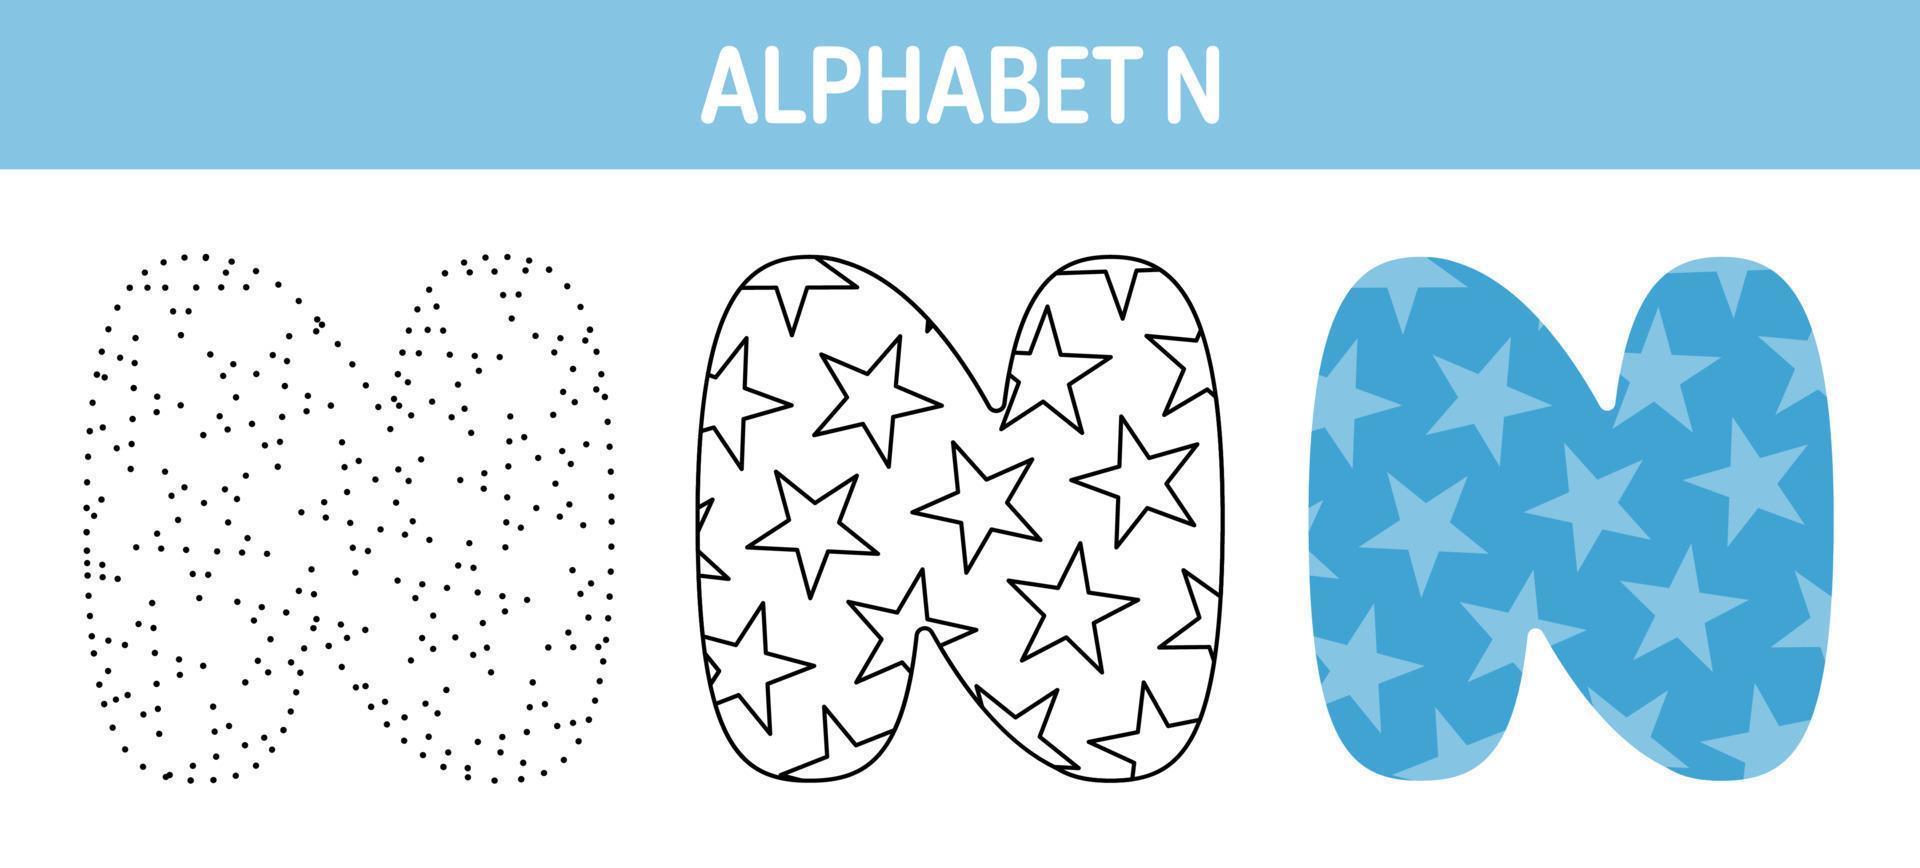 Arbeitsblatt zum nachzeichnen und ausmalen von alphabet n für kinder vektor